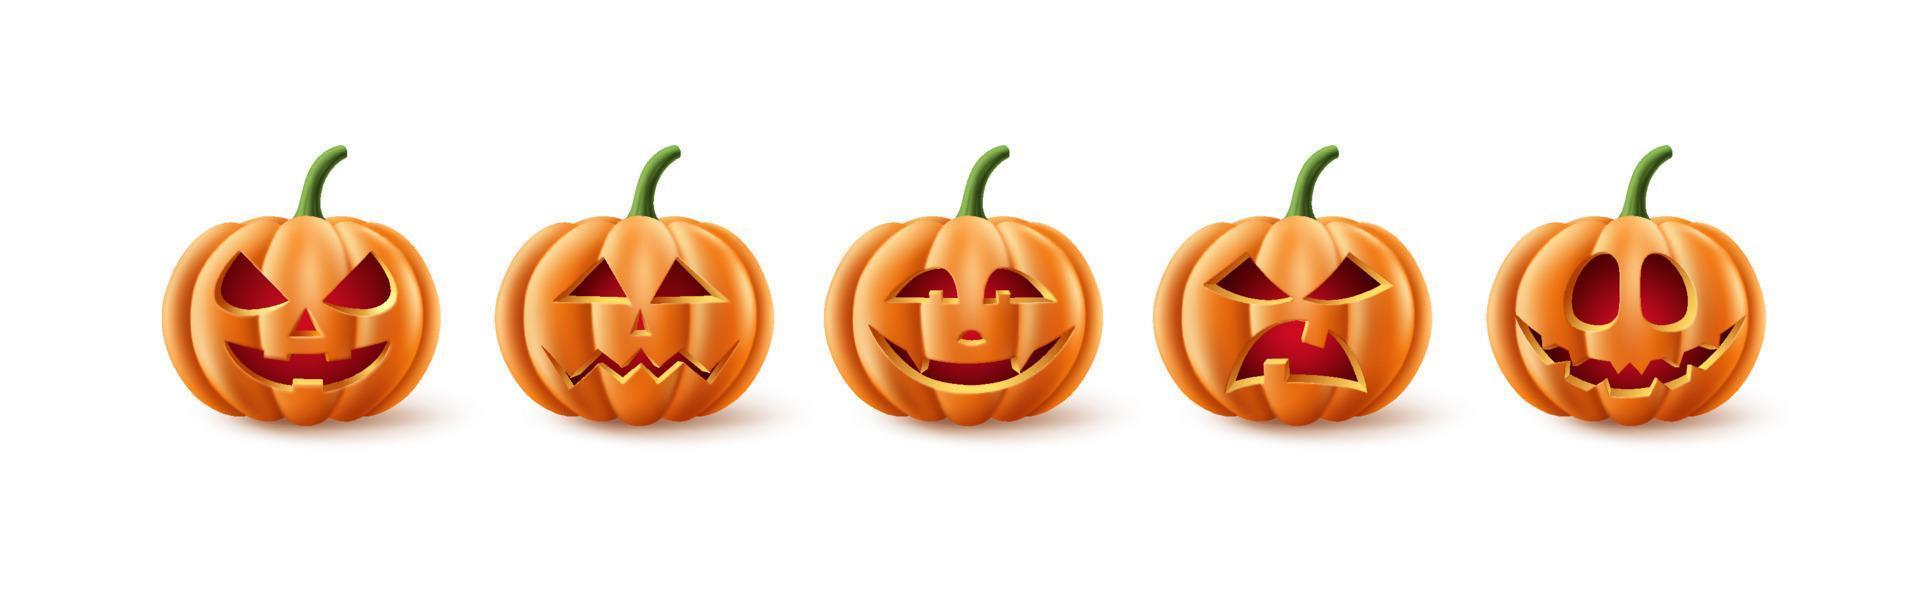 halloween pompoenen vector set. halloween pompoen element collectie in spookachtig, eng en griezelig met gezichtsuitdrukkingen voor pictogrammen en decoraties geïsoleerd op een witte achtergrond. vectorillustratie.